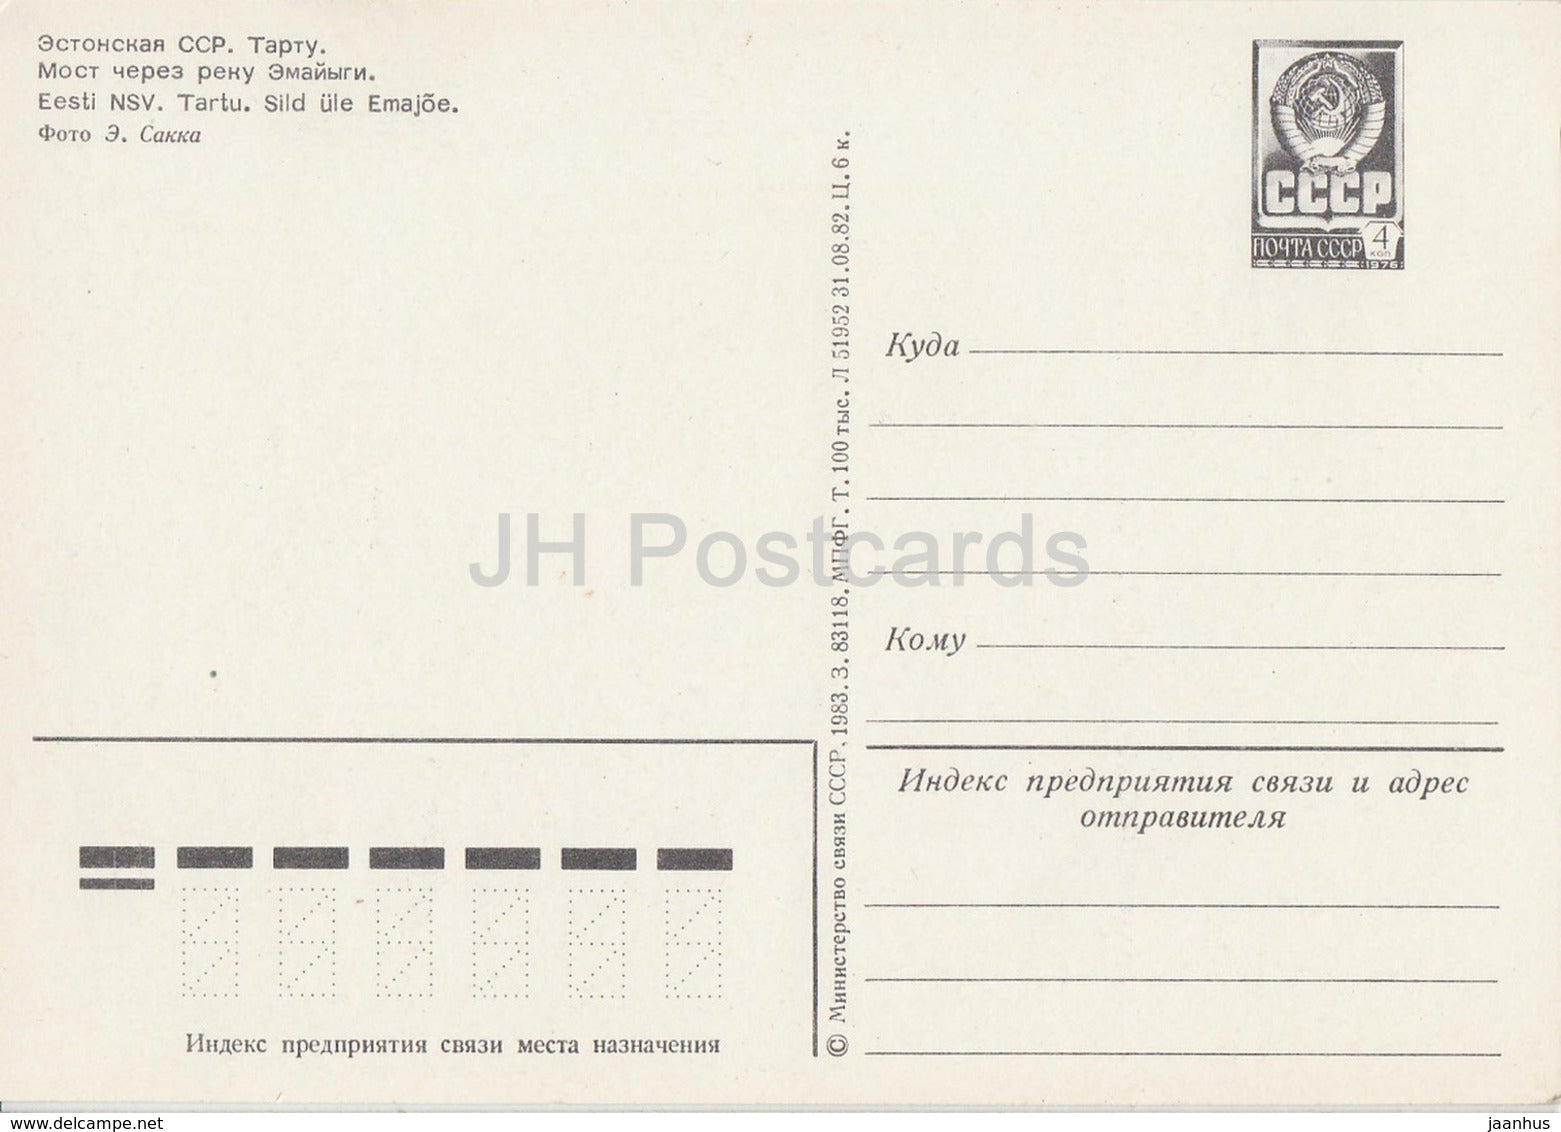 Bridge over Emajõgi river - Tartu - postal stationery - 1983 - Estonia USSR - unused - JH Postcards